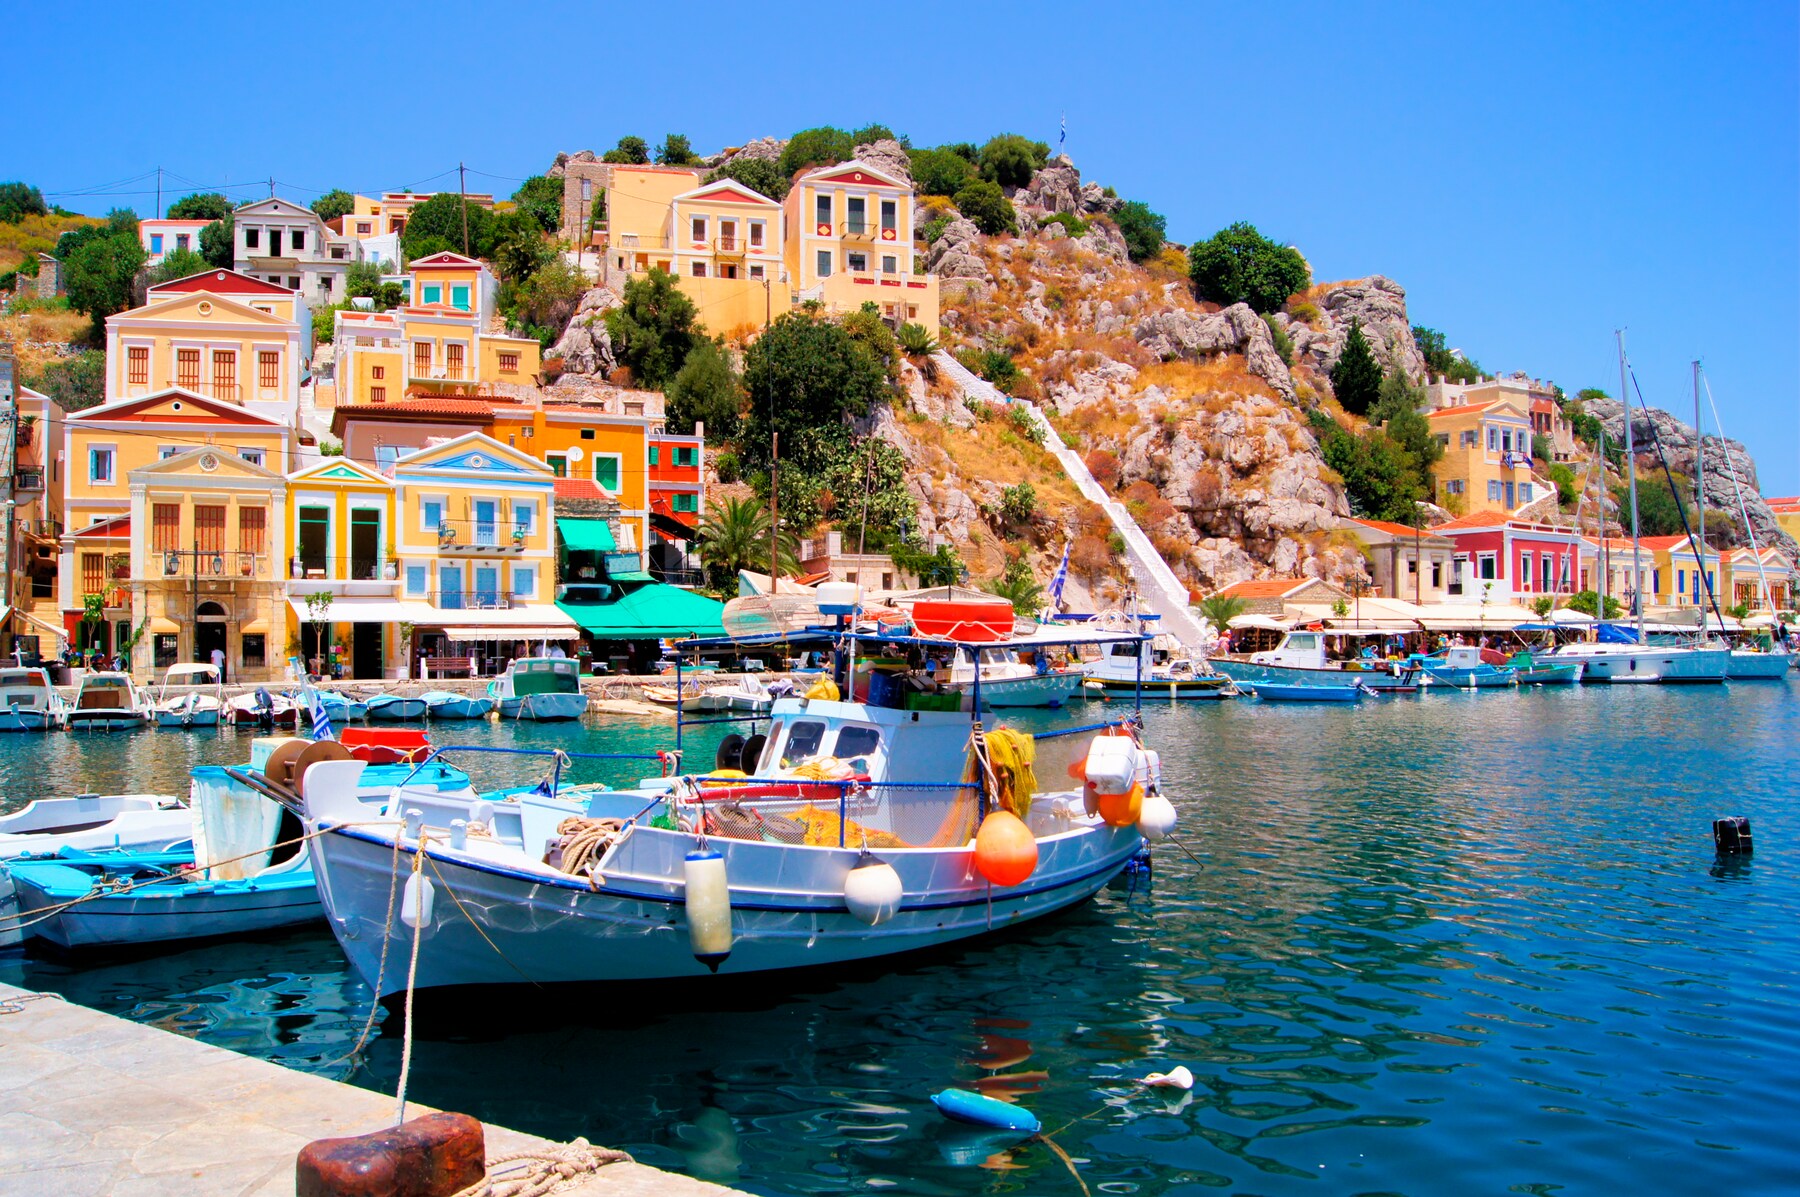 фото остров сими греция